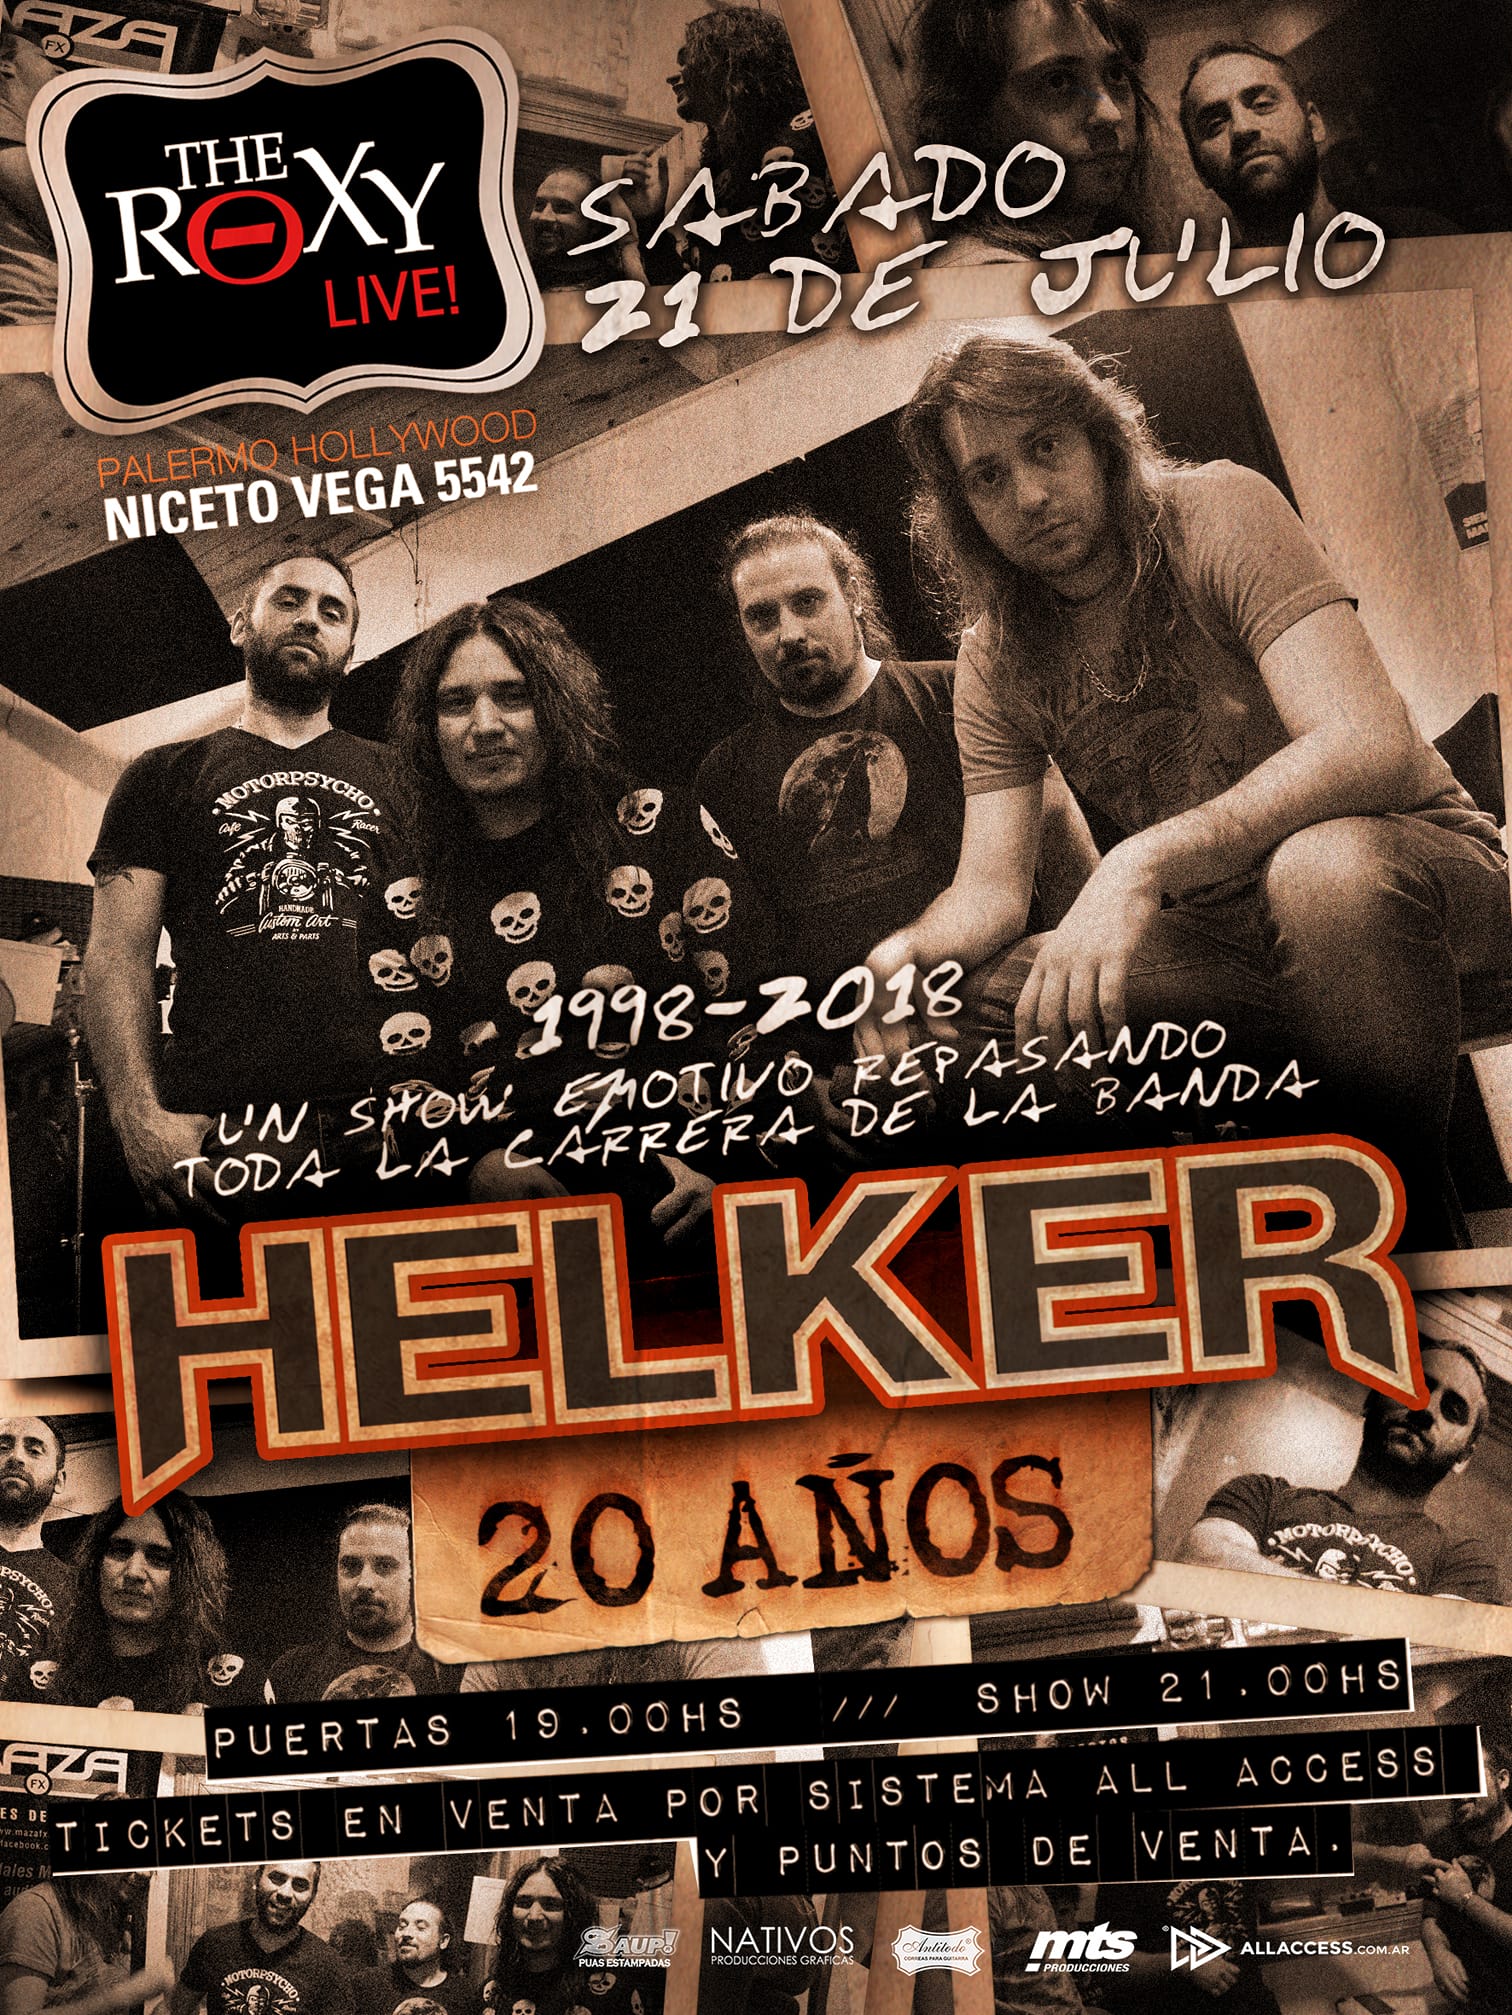 Helker: 20 años a puro metal!!!!